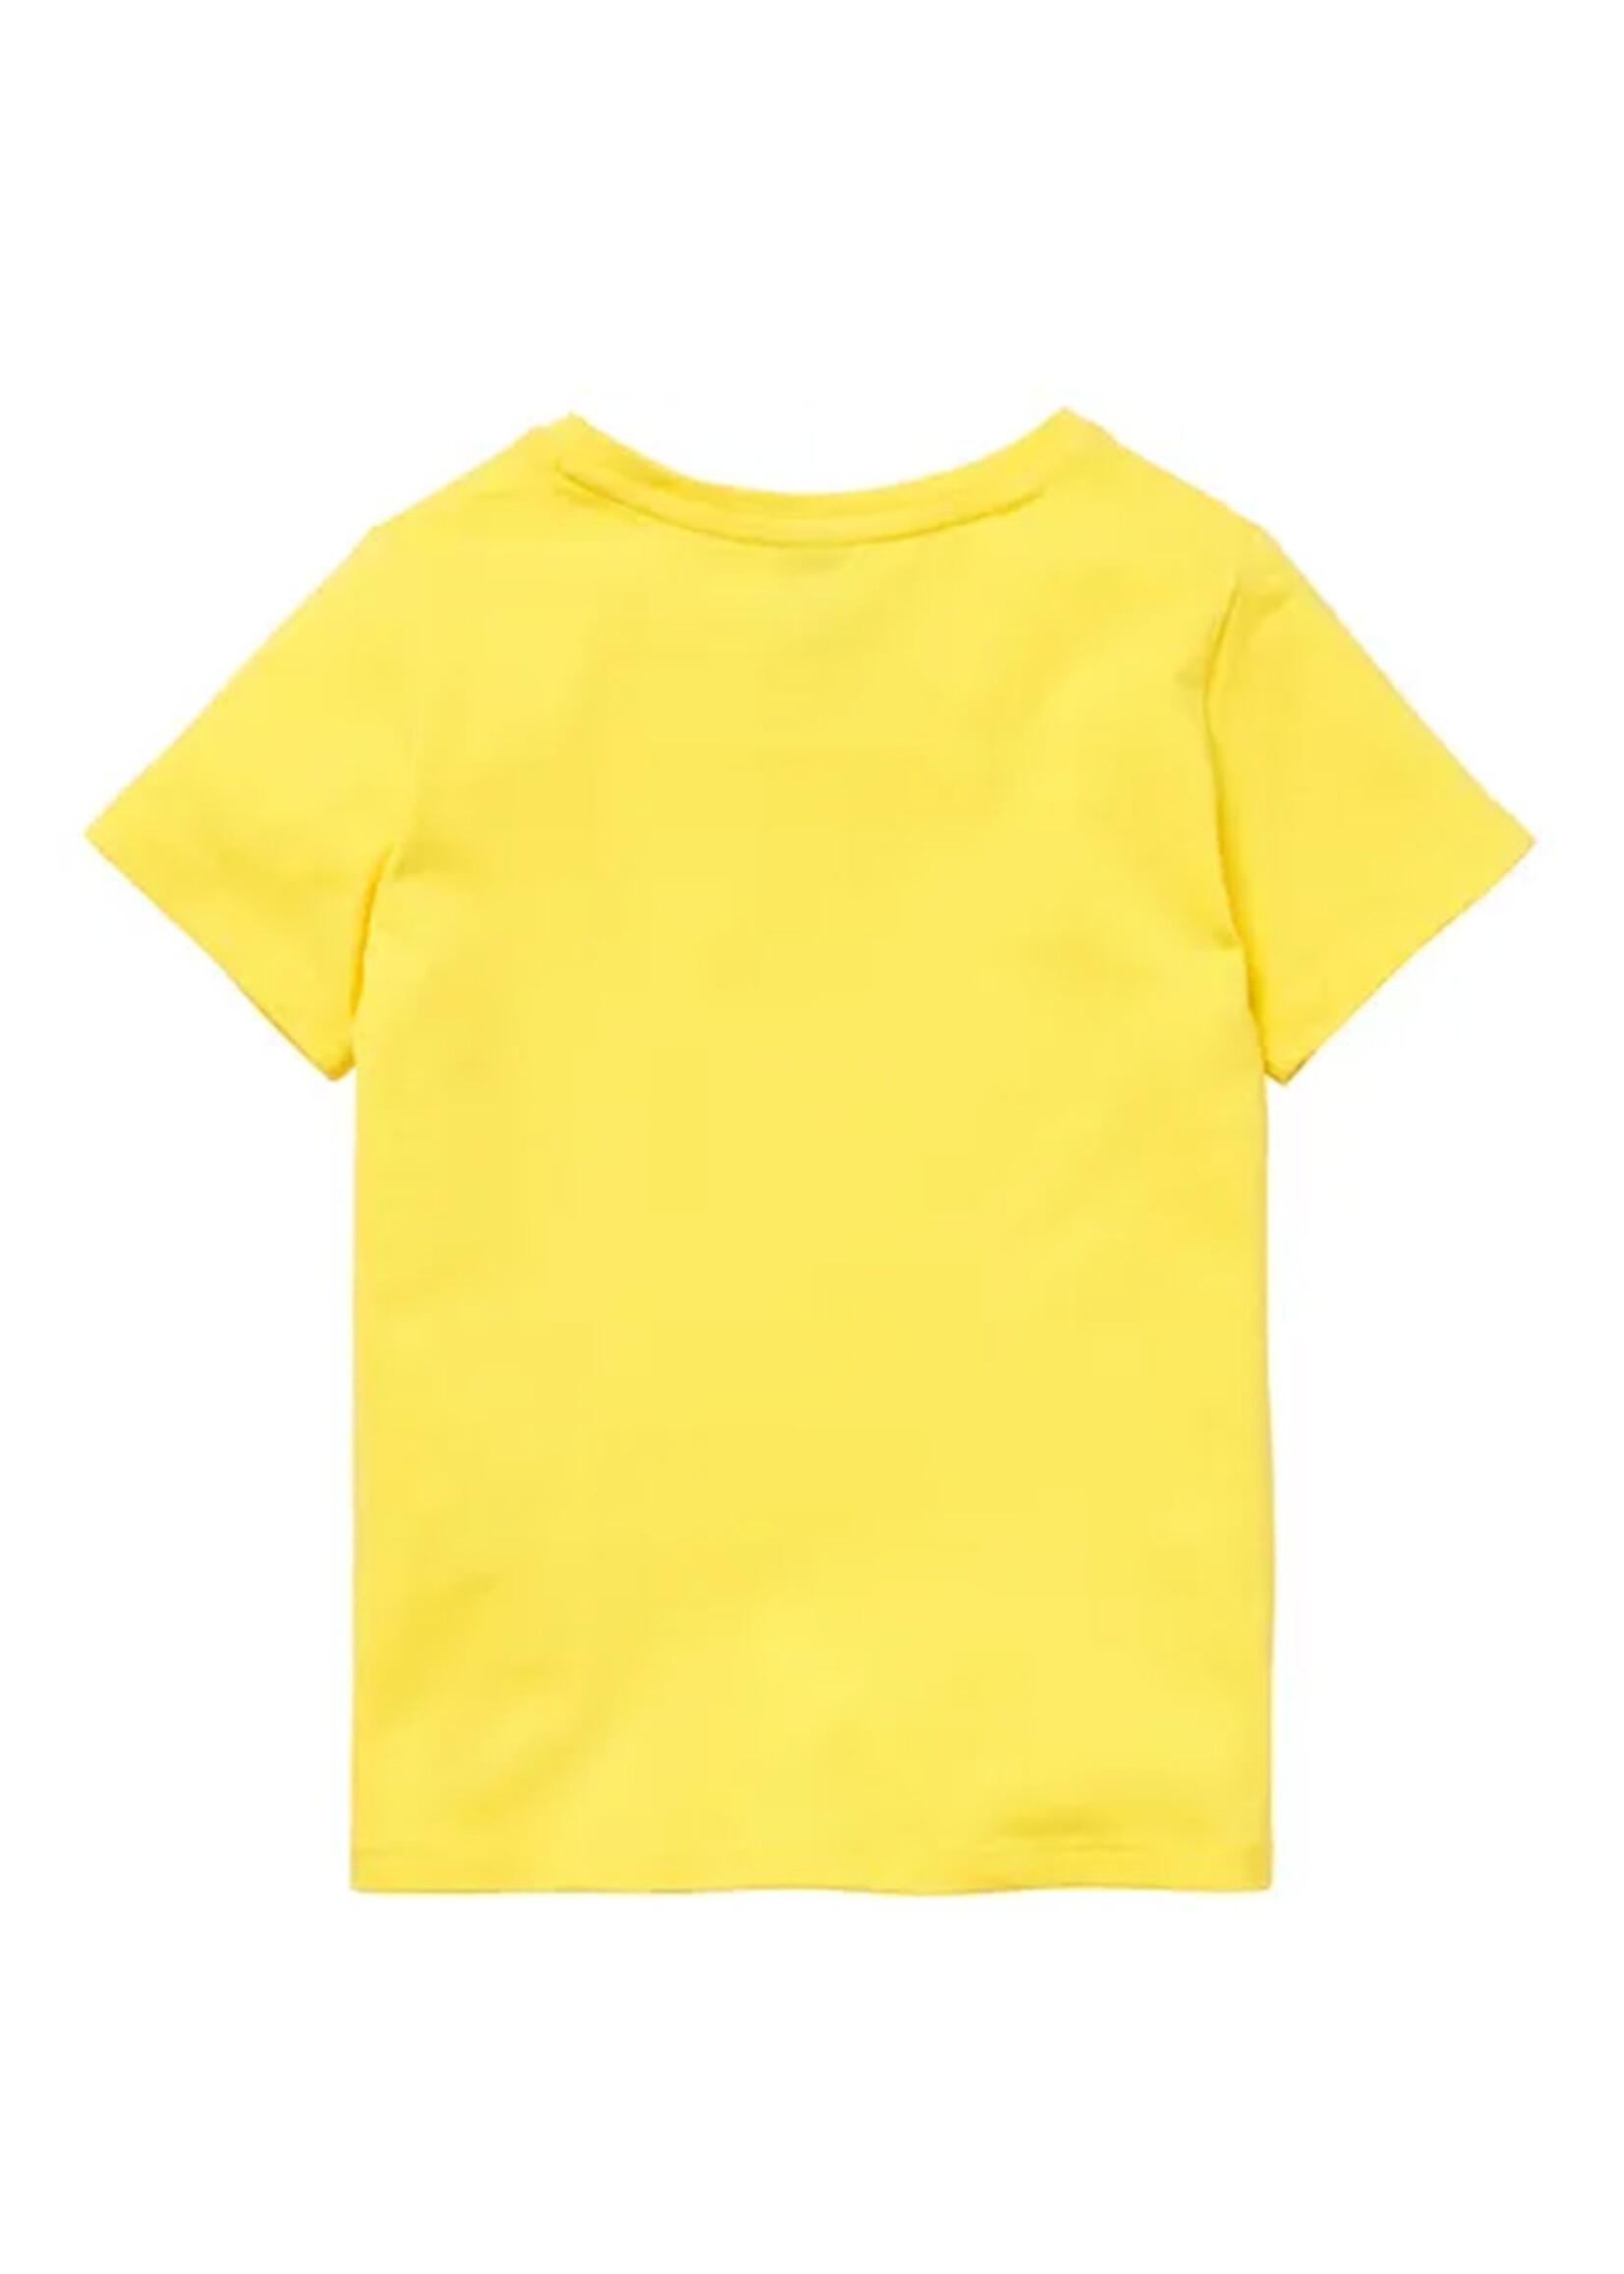 HELLY HANSEN T-shirt HH LOGO BUMBLEBEE / Jaune